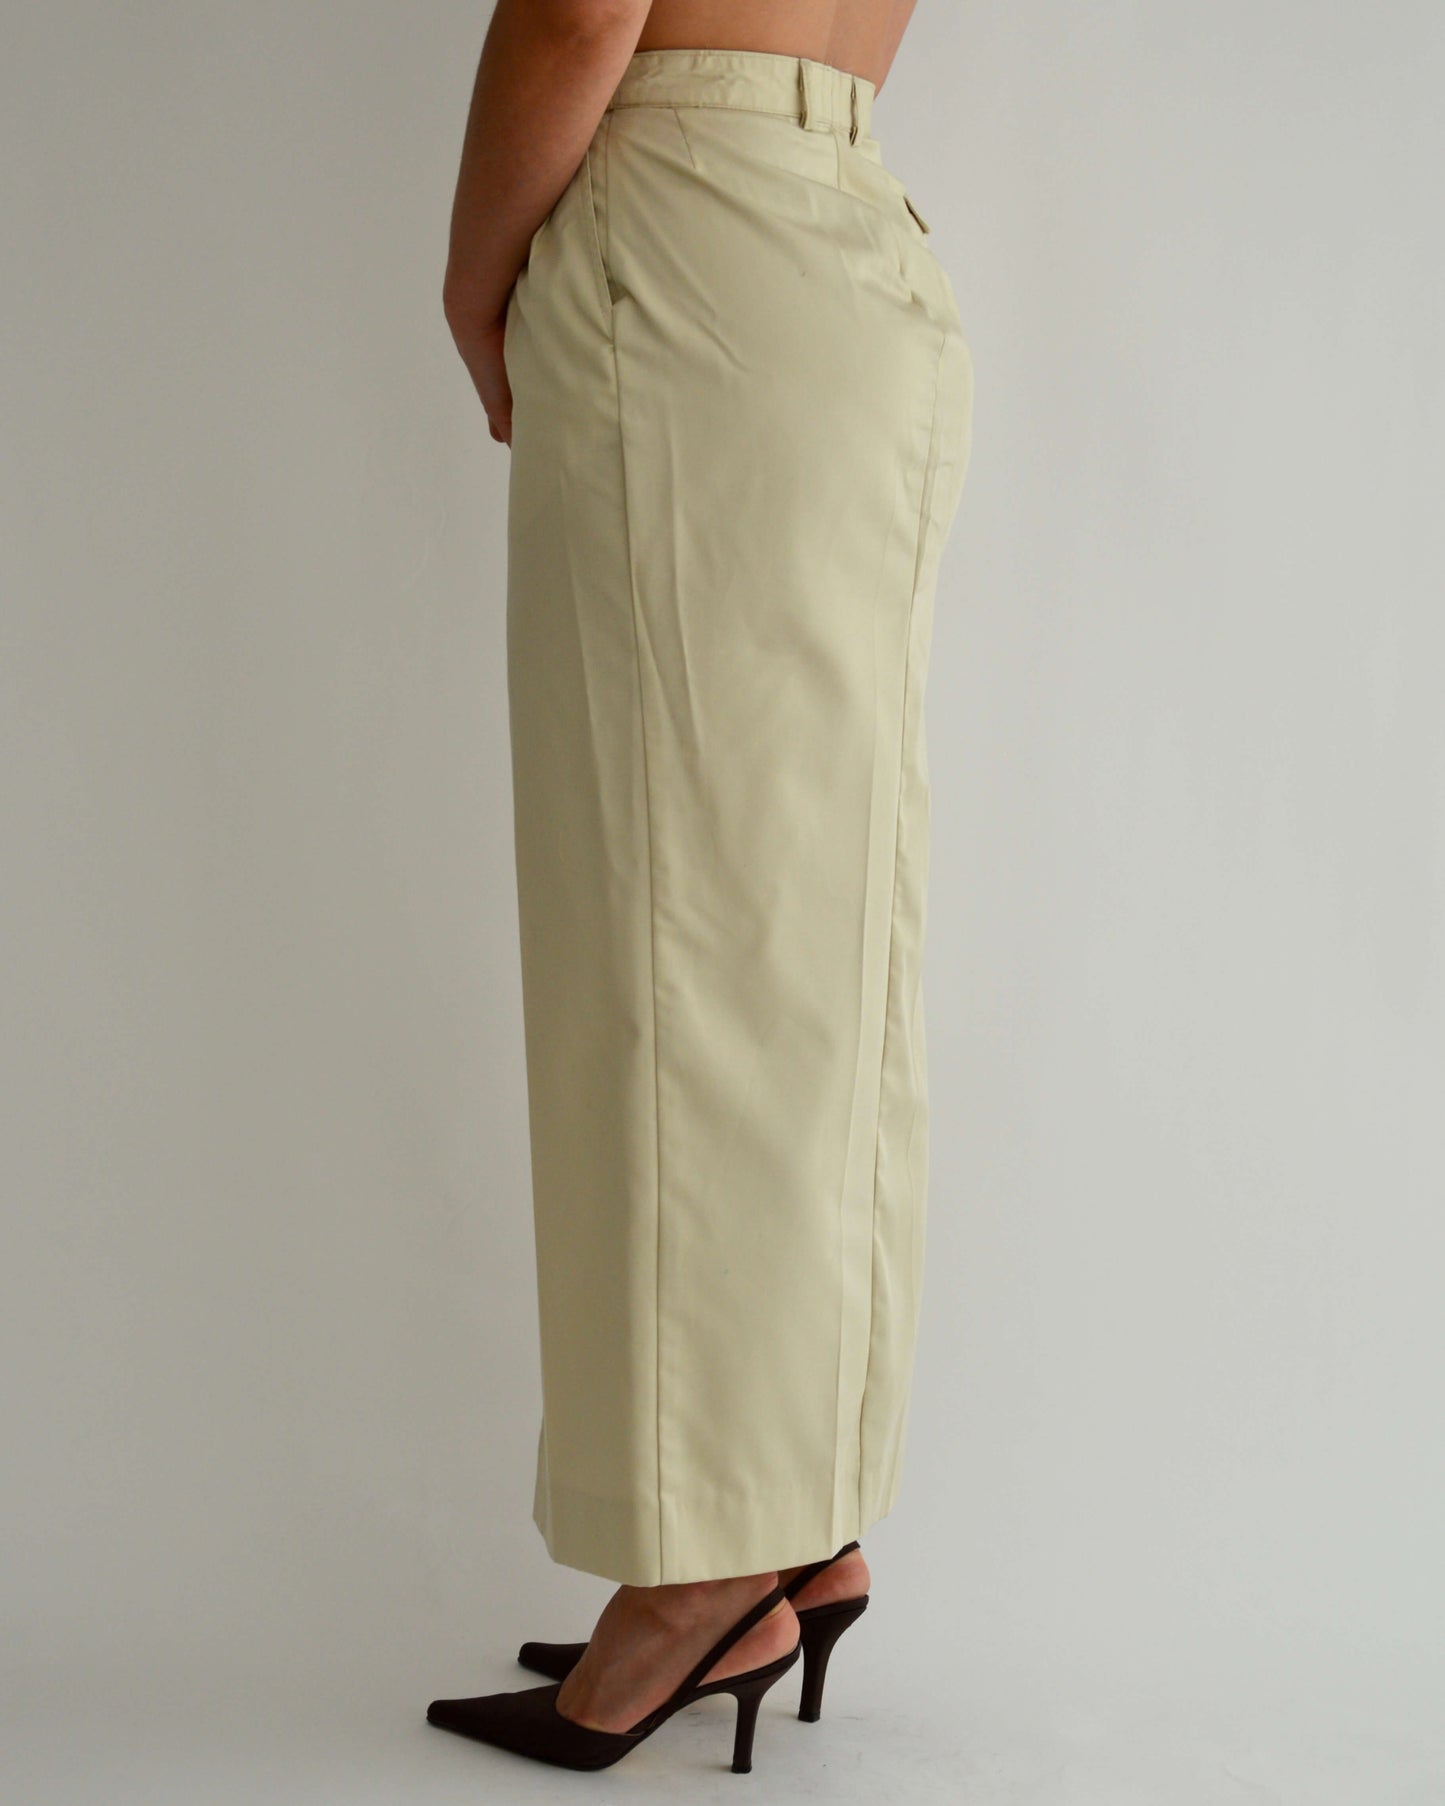 Long Skirt - Soft Beige (S/M)